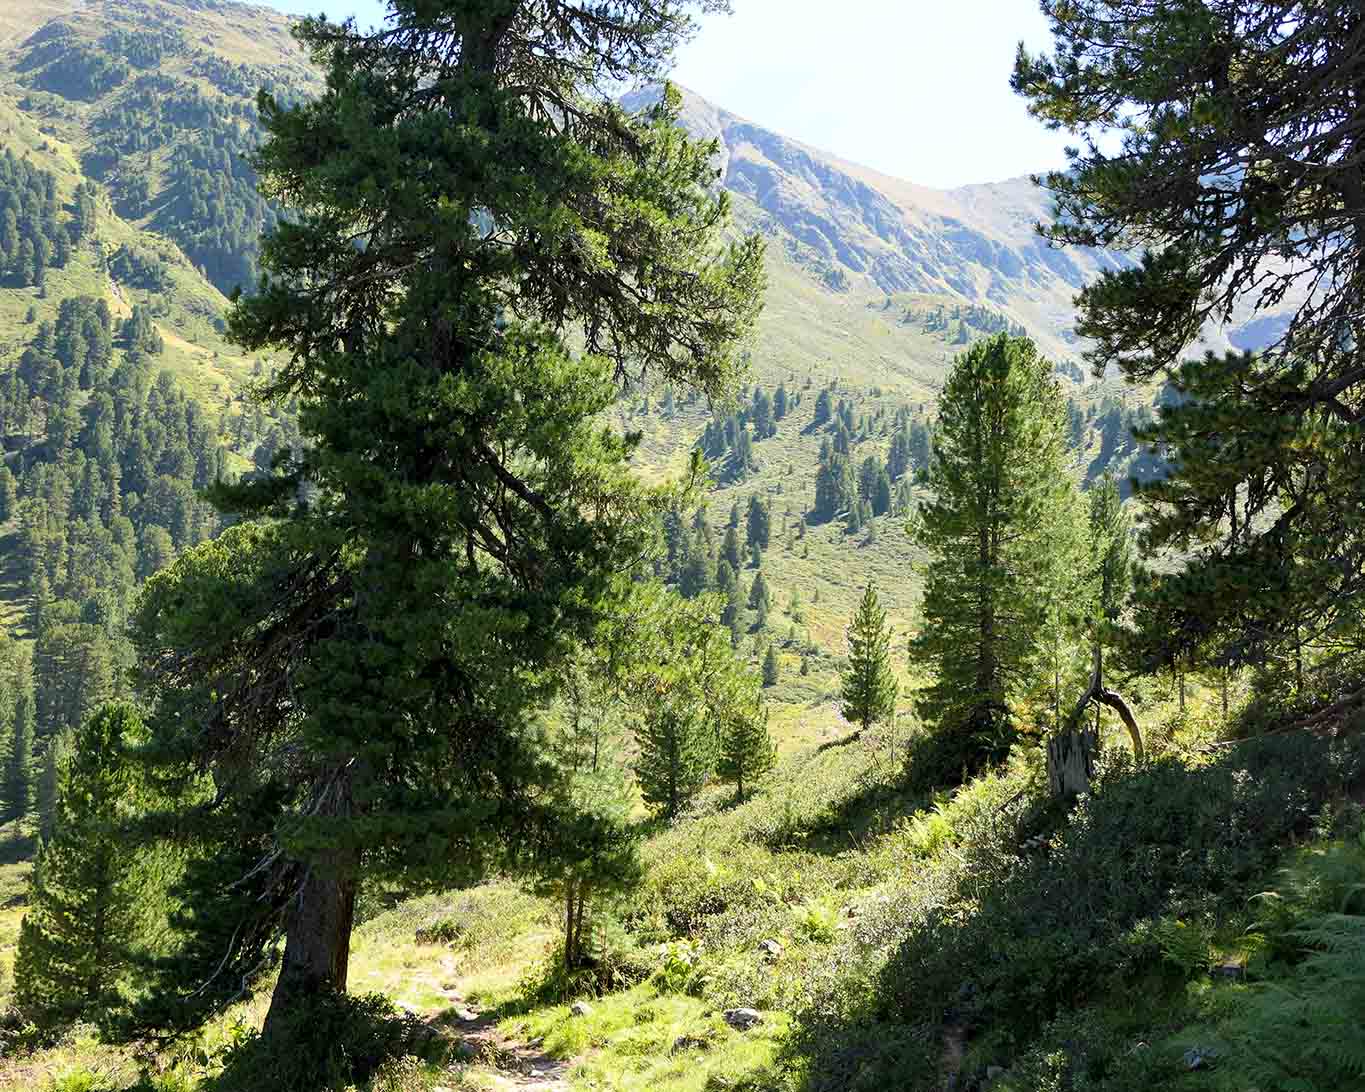 Zirbelkiefern, im Schweizerischen Arven genannt, bevorzugen Höhenlagen ab 1300 Metern Seehöhe.